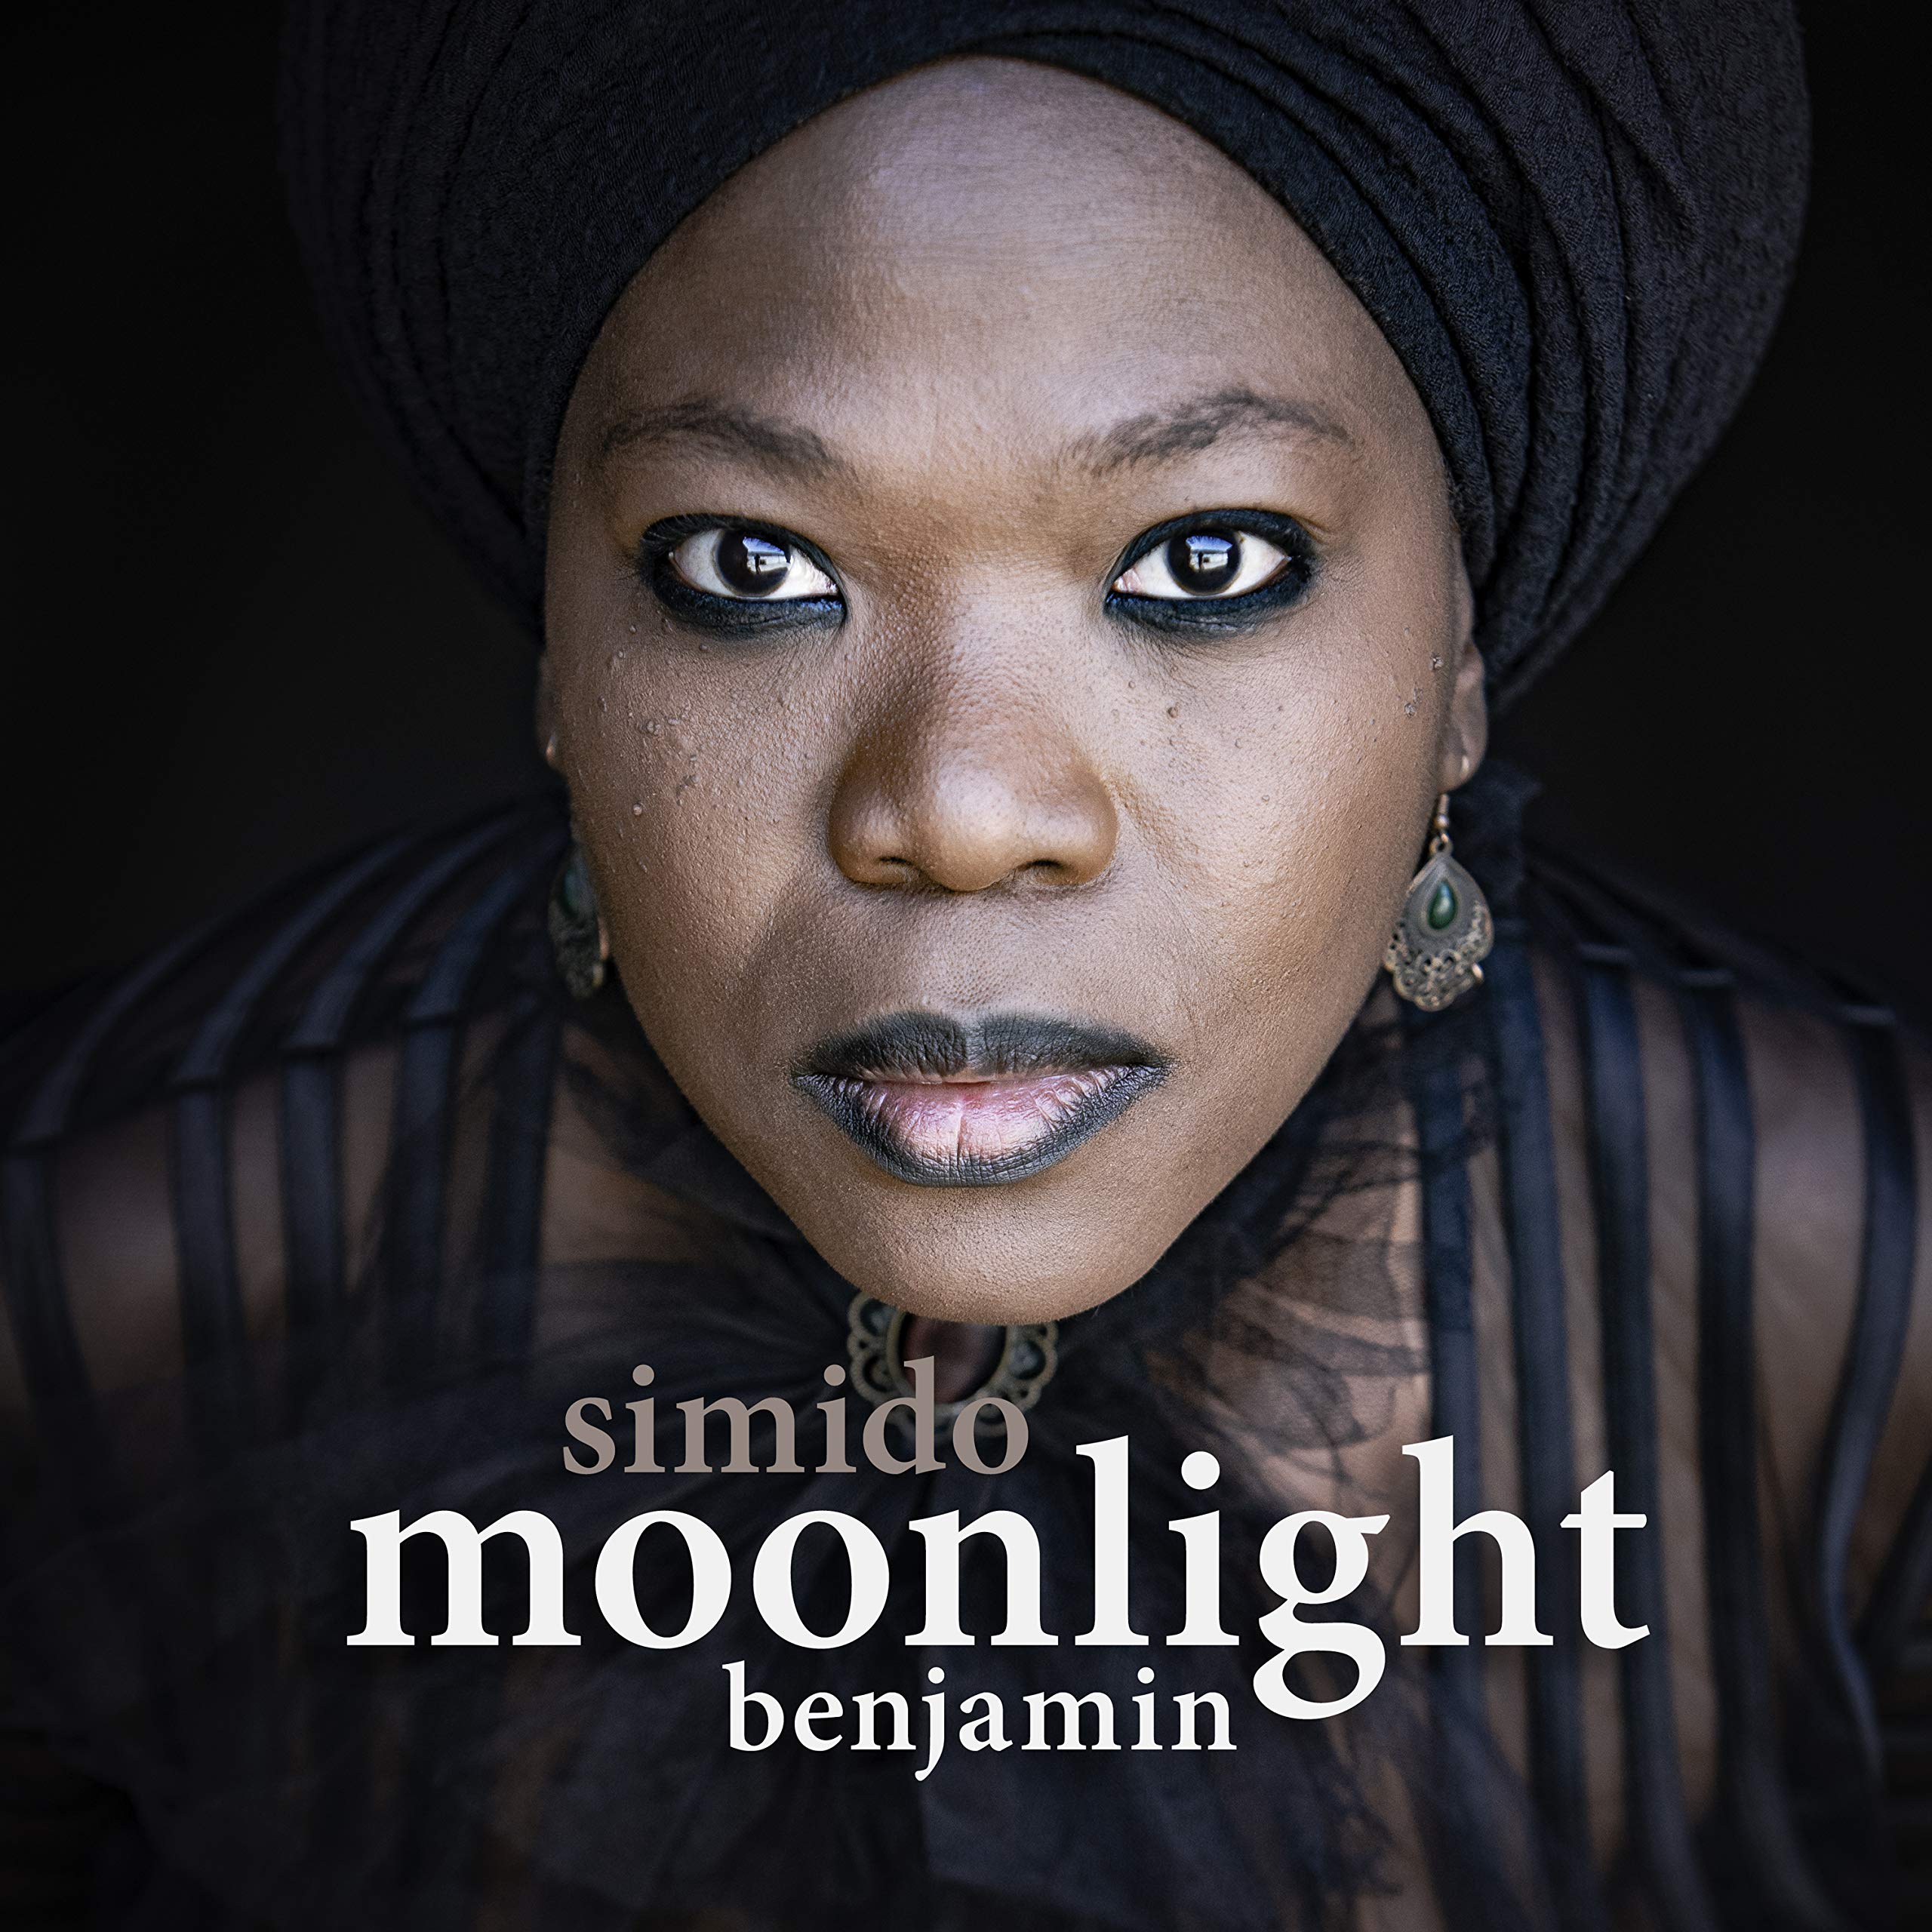 Moonlight Benjamin – Simido (2020) [FLAC]